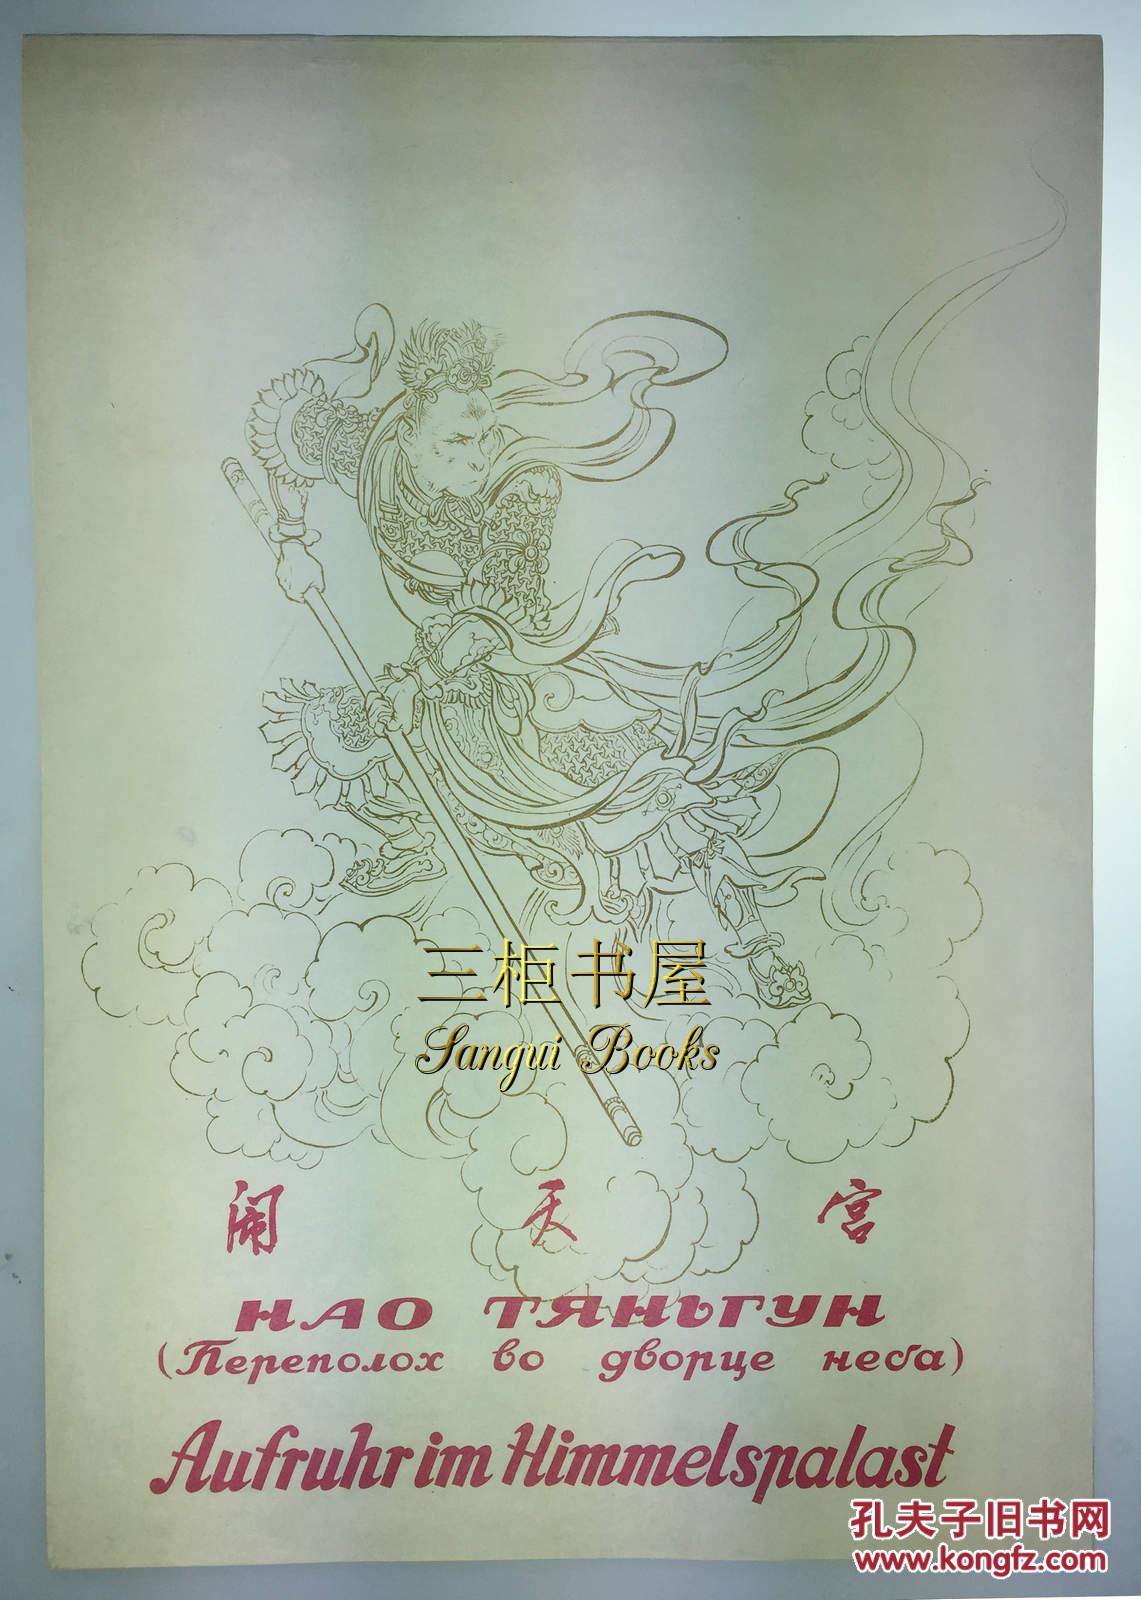 1956年,闹天宫,[大闹天宫](西游记)/ 刘继卣 / 8开彩色/人民美术出版社